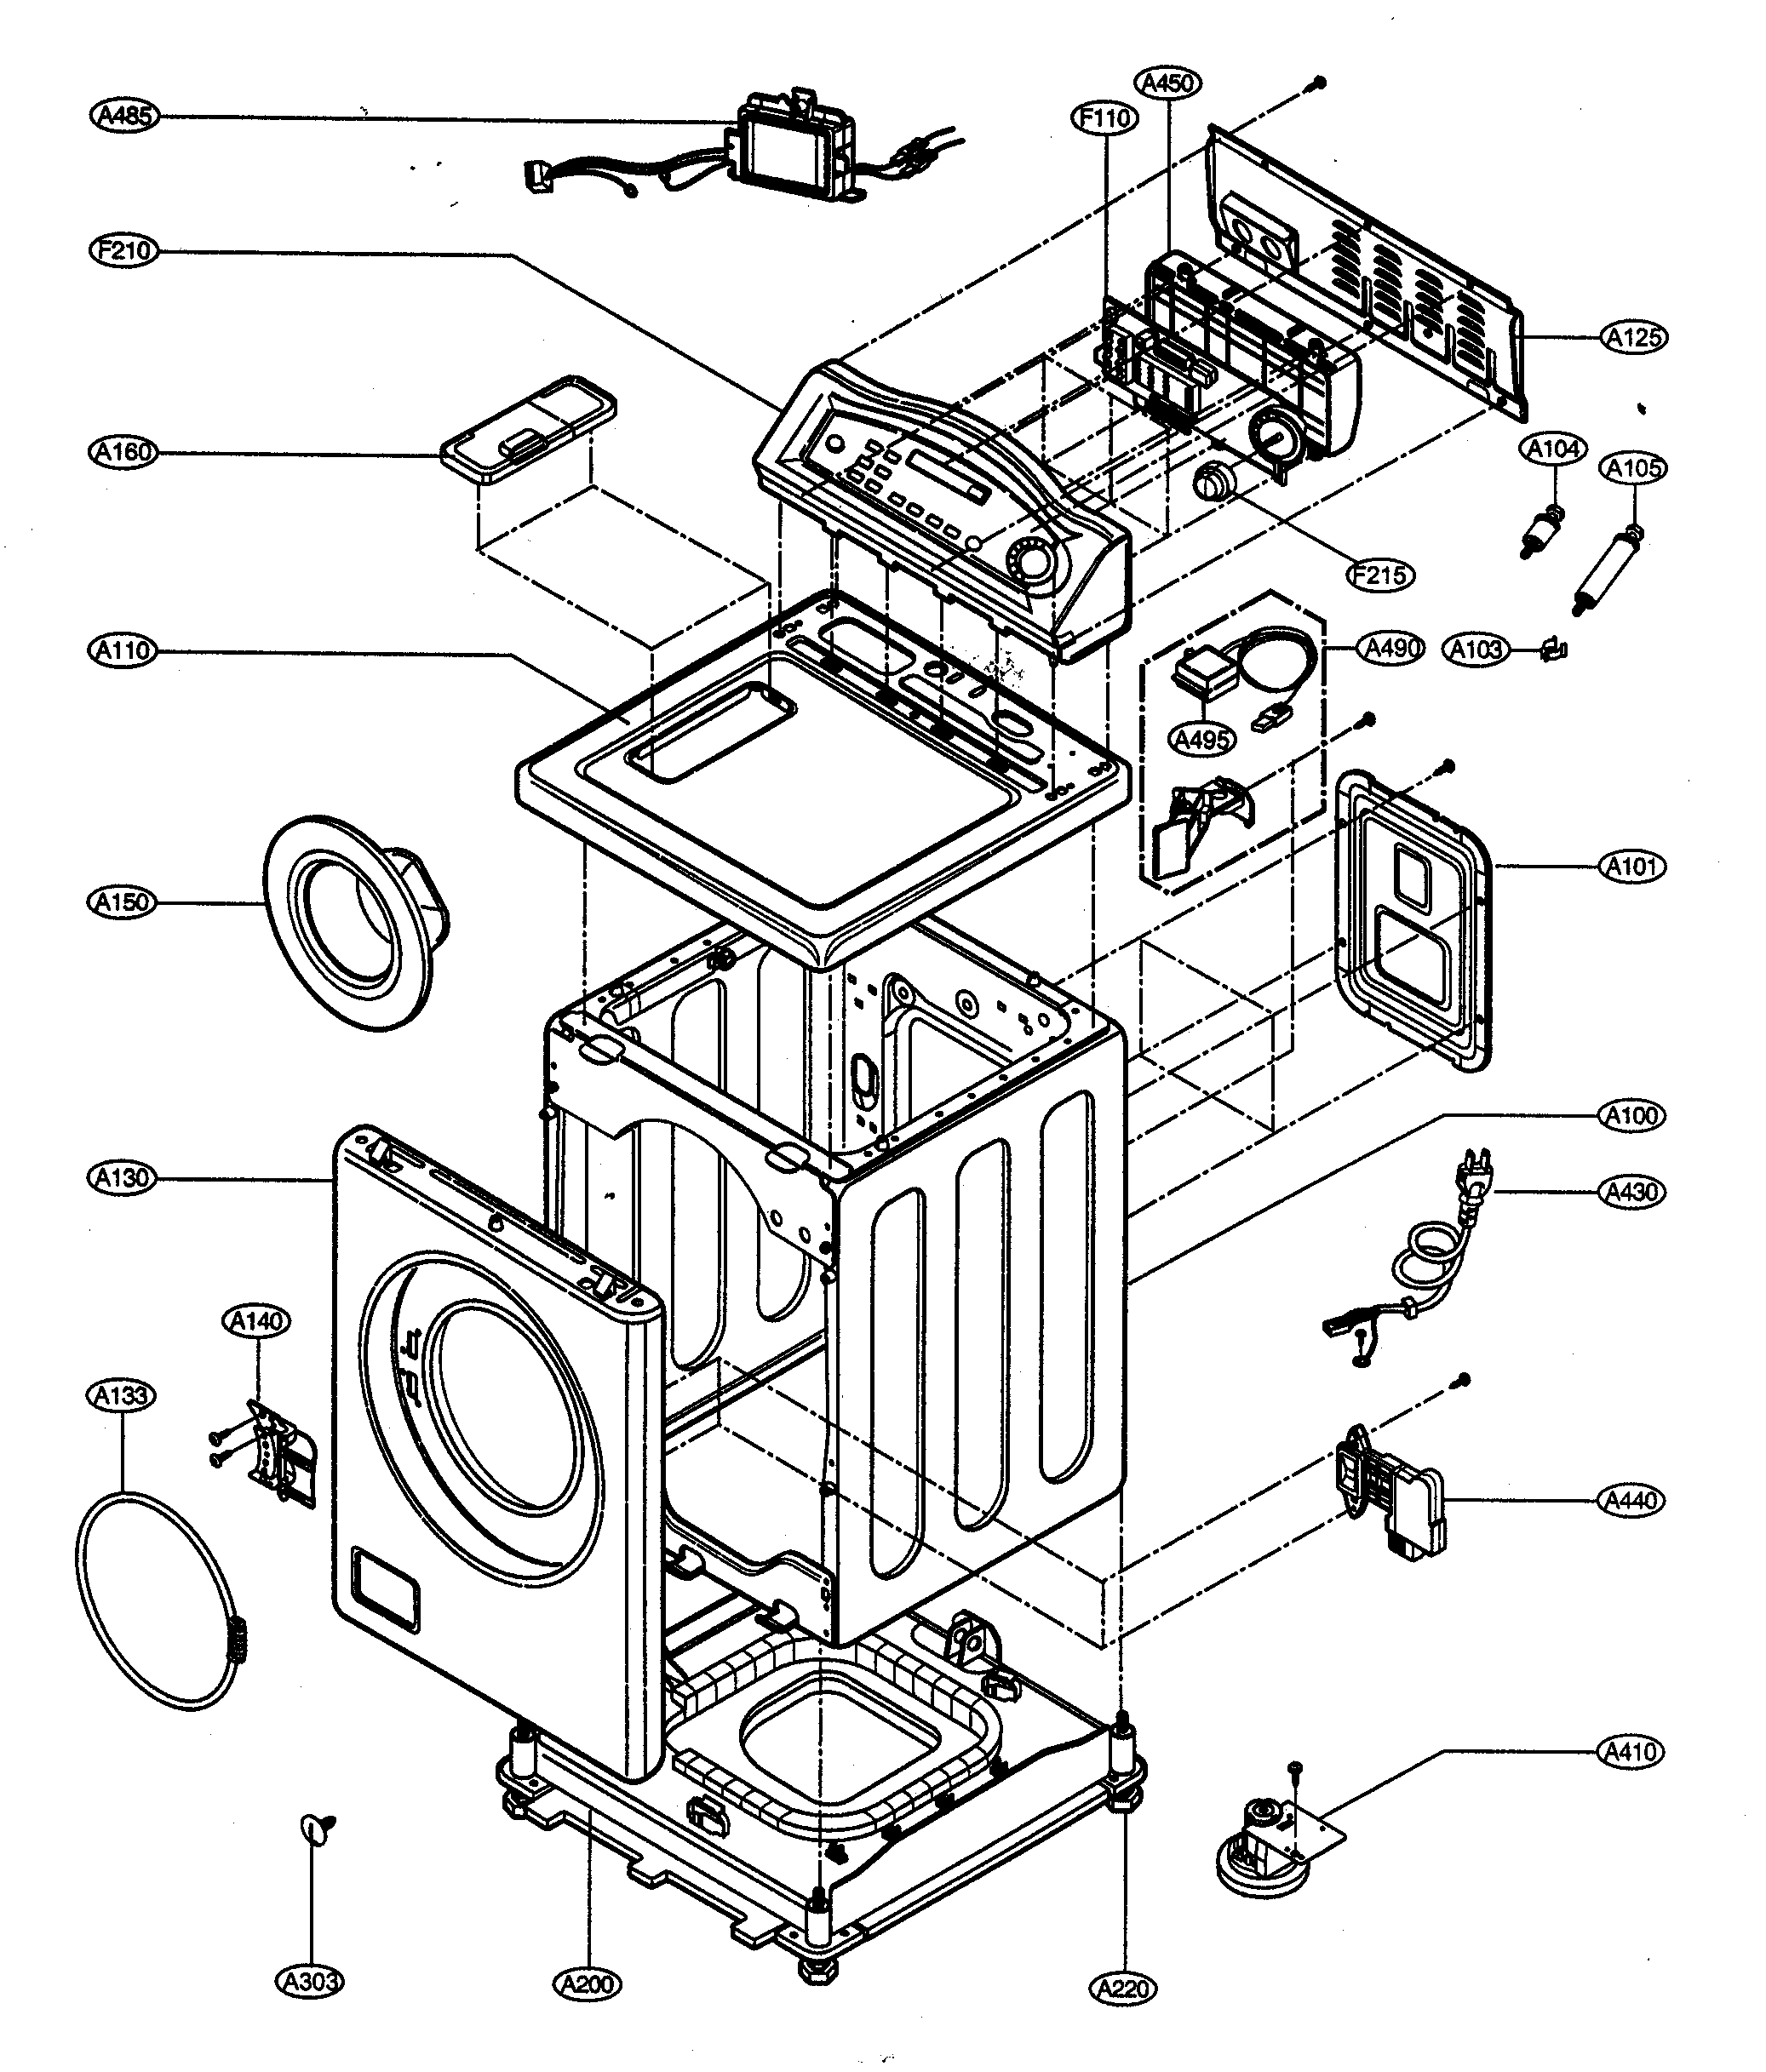 Front Loading Washing Machine Circuit Diagram 3151